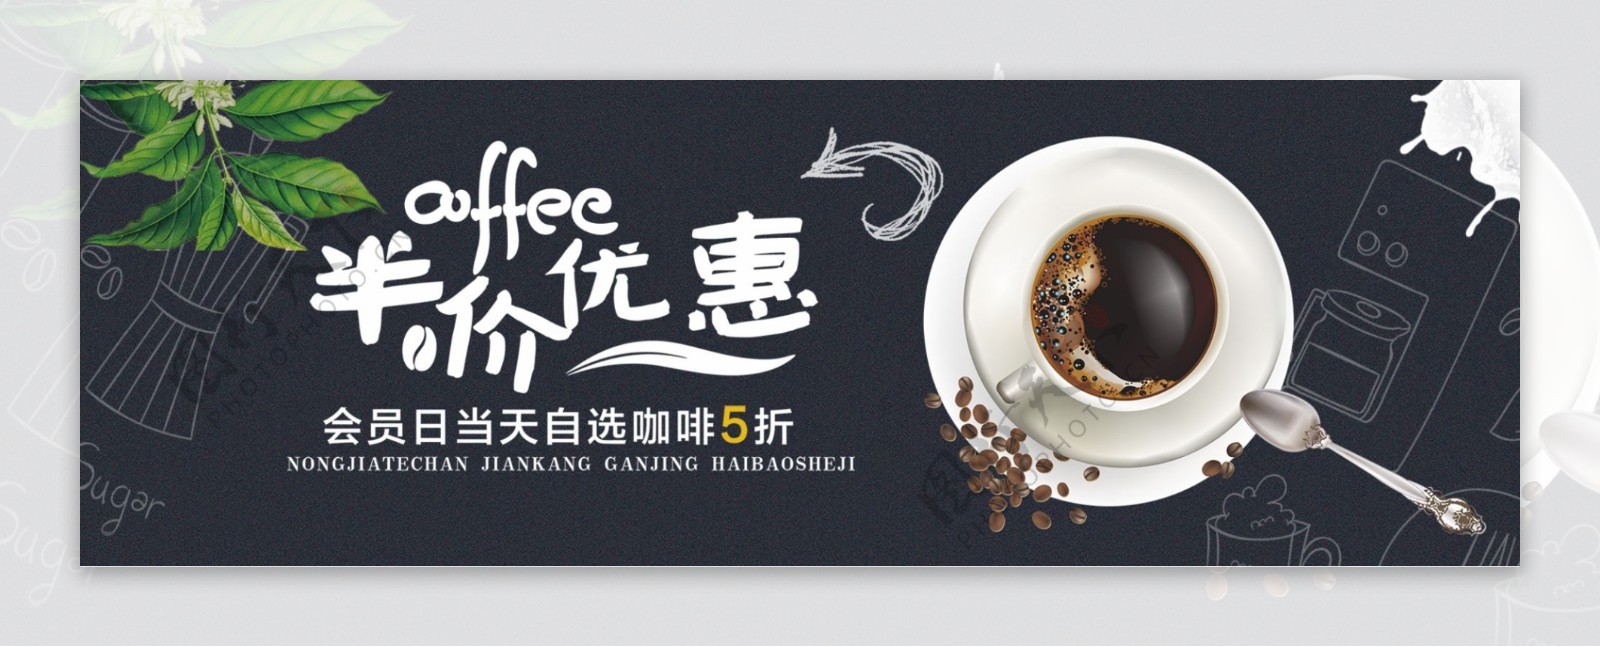 黑色简约咖啡节促销电商banner